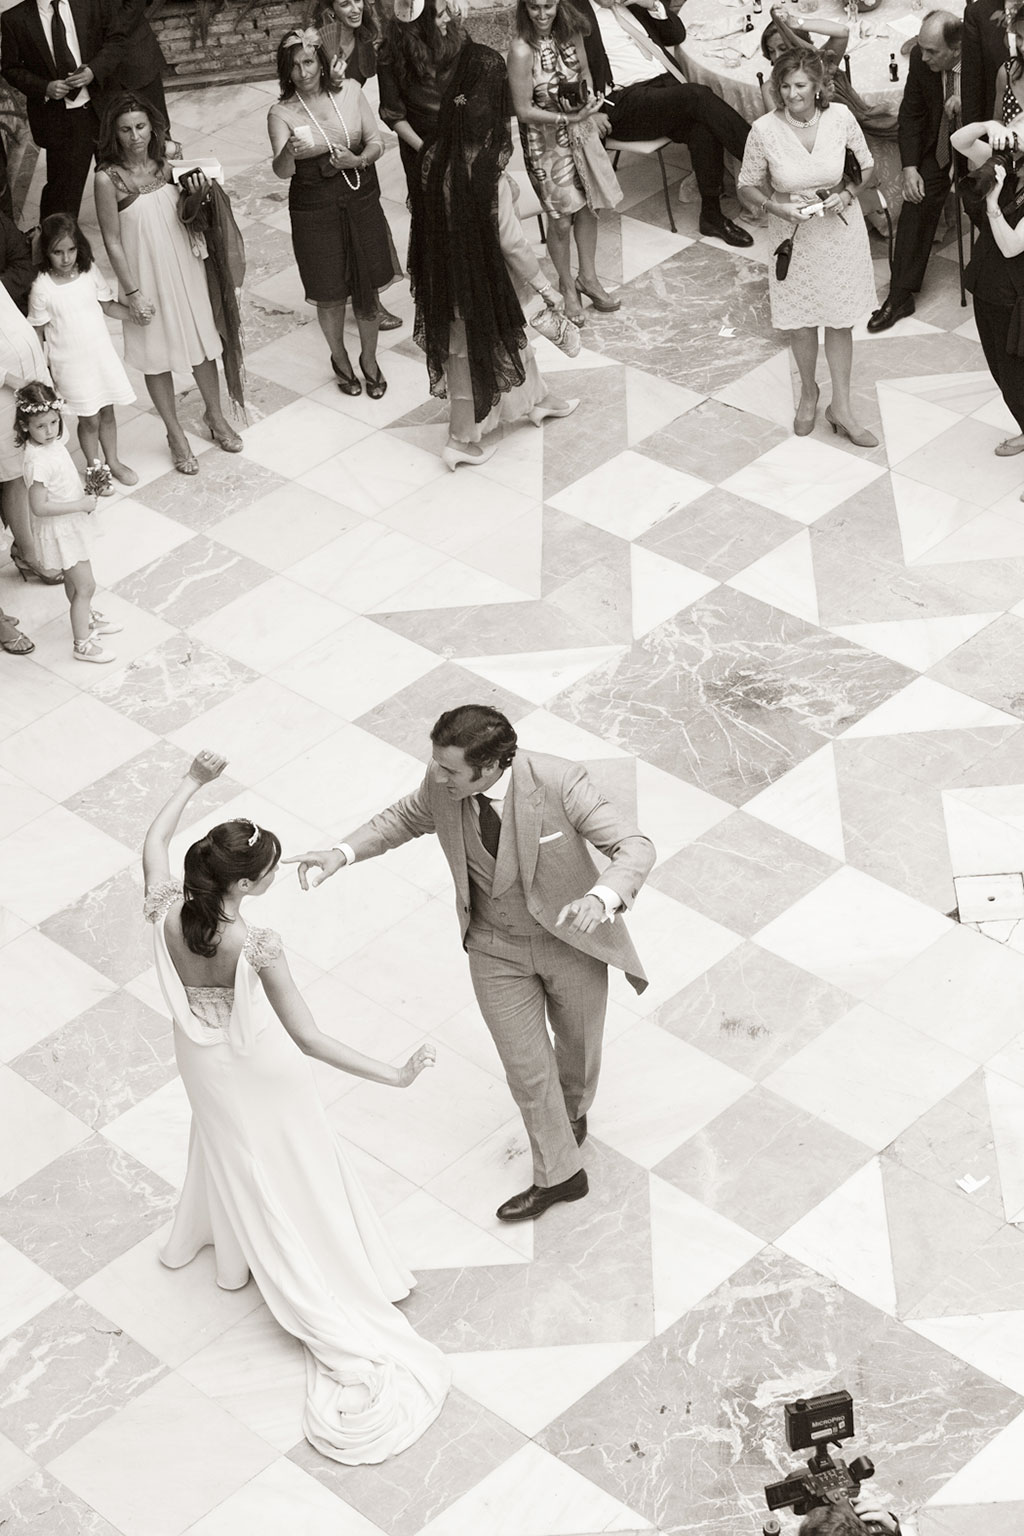 La boda de Ana y Alvaro | 321mecaso